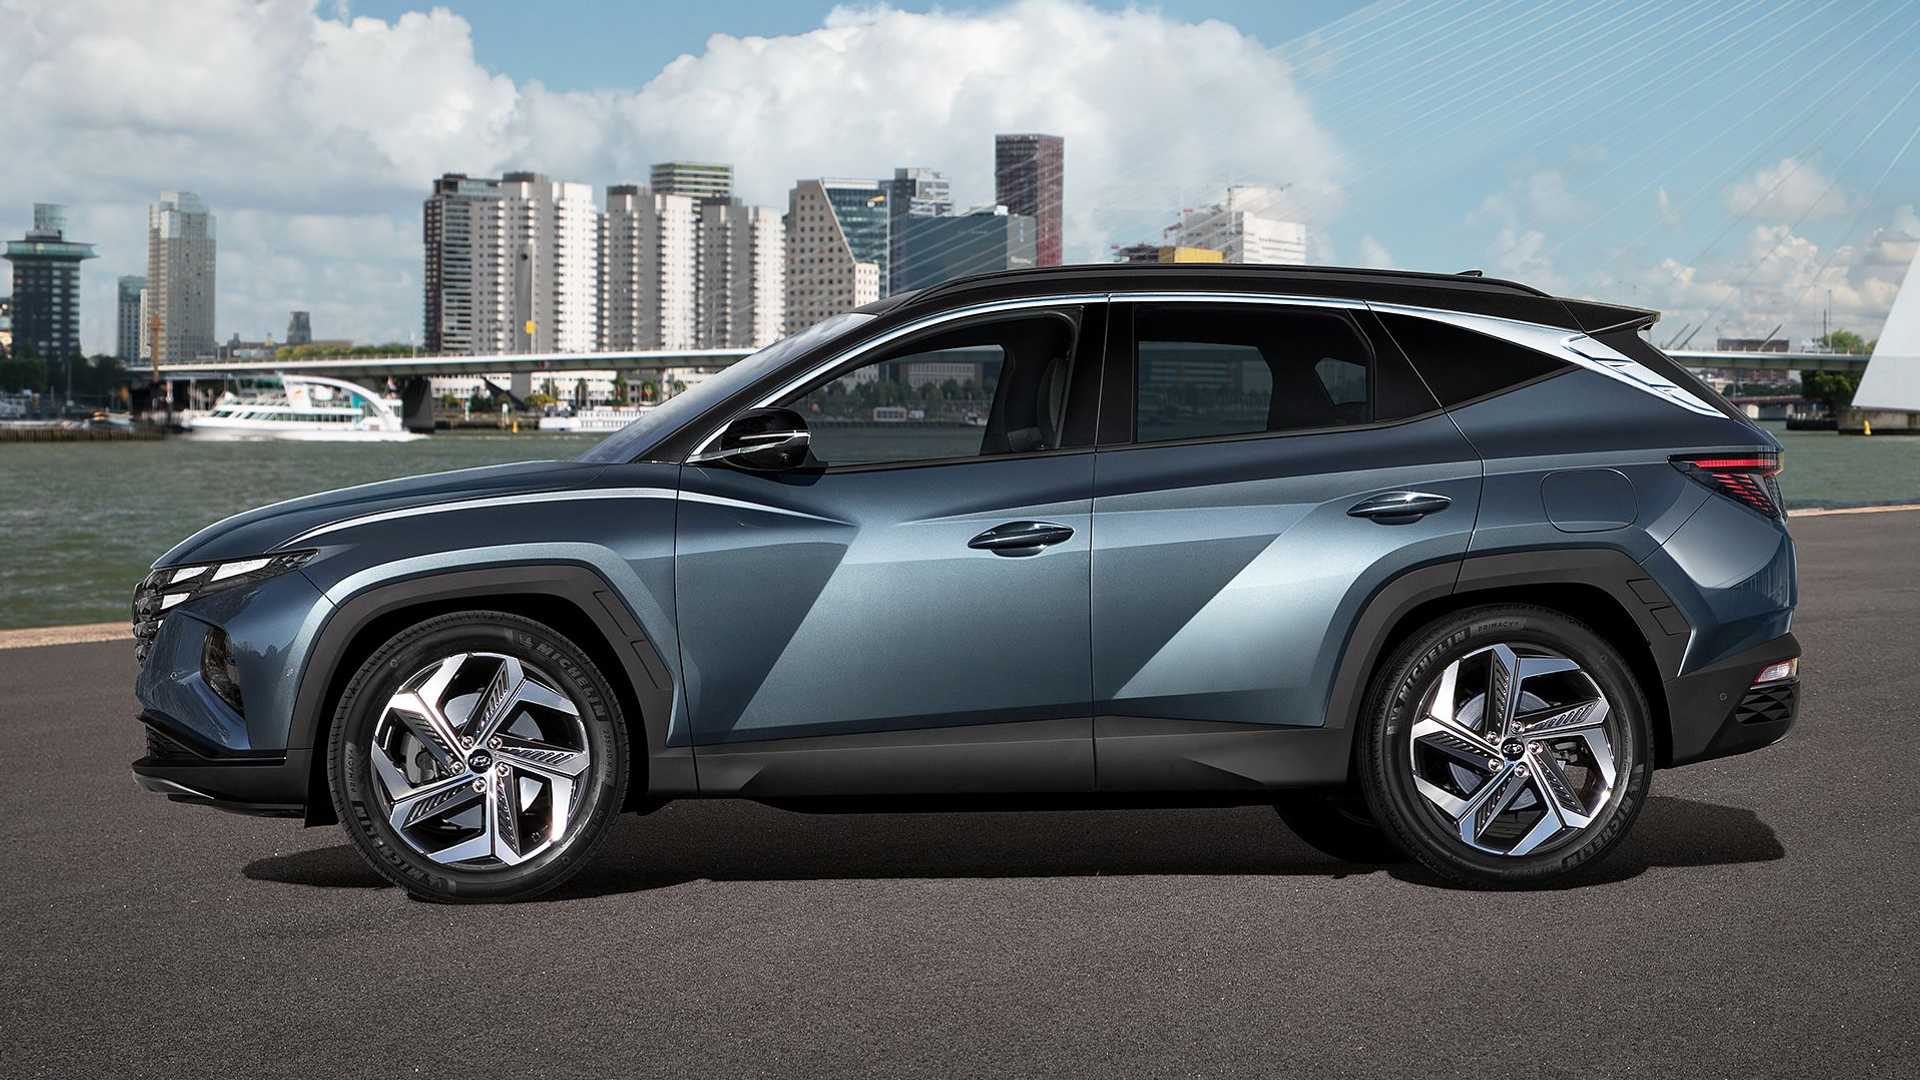 2022 Hyundai Tucson Review, Pricing, and Specs - Wallace Hyundai Blog